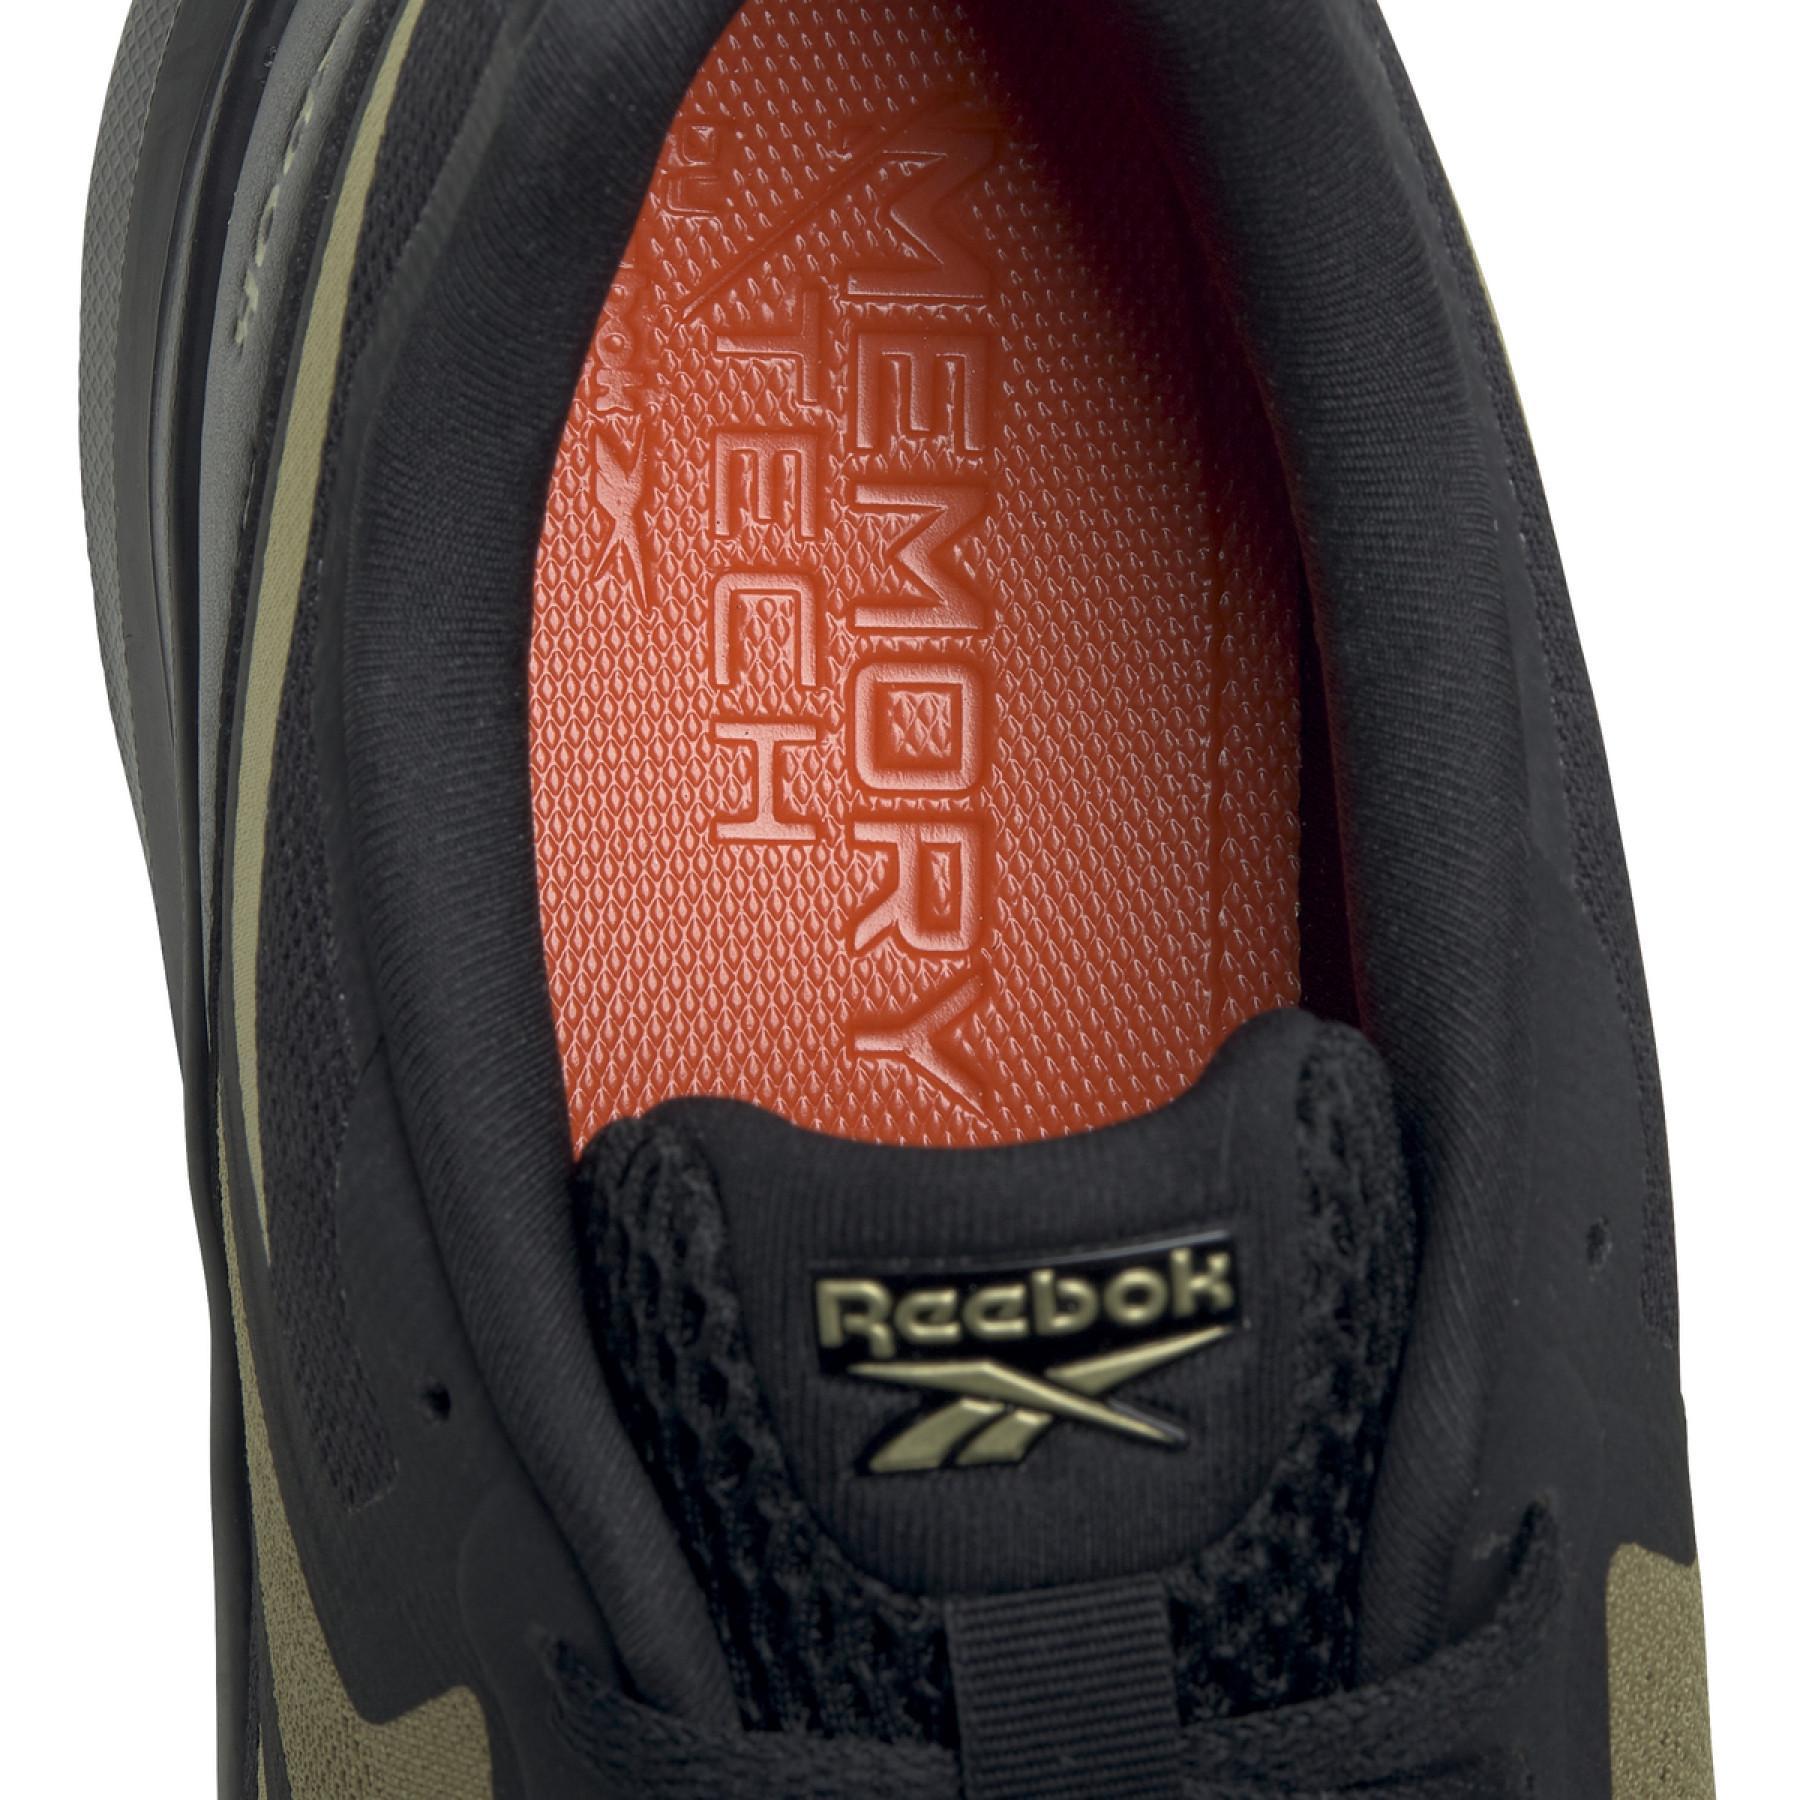 Sapatos de Mulher Reebok Runner 4.0